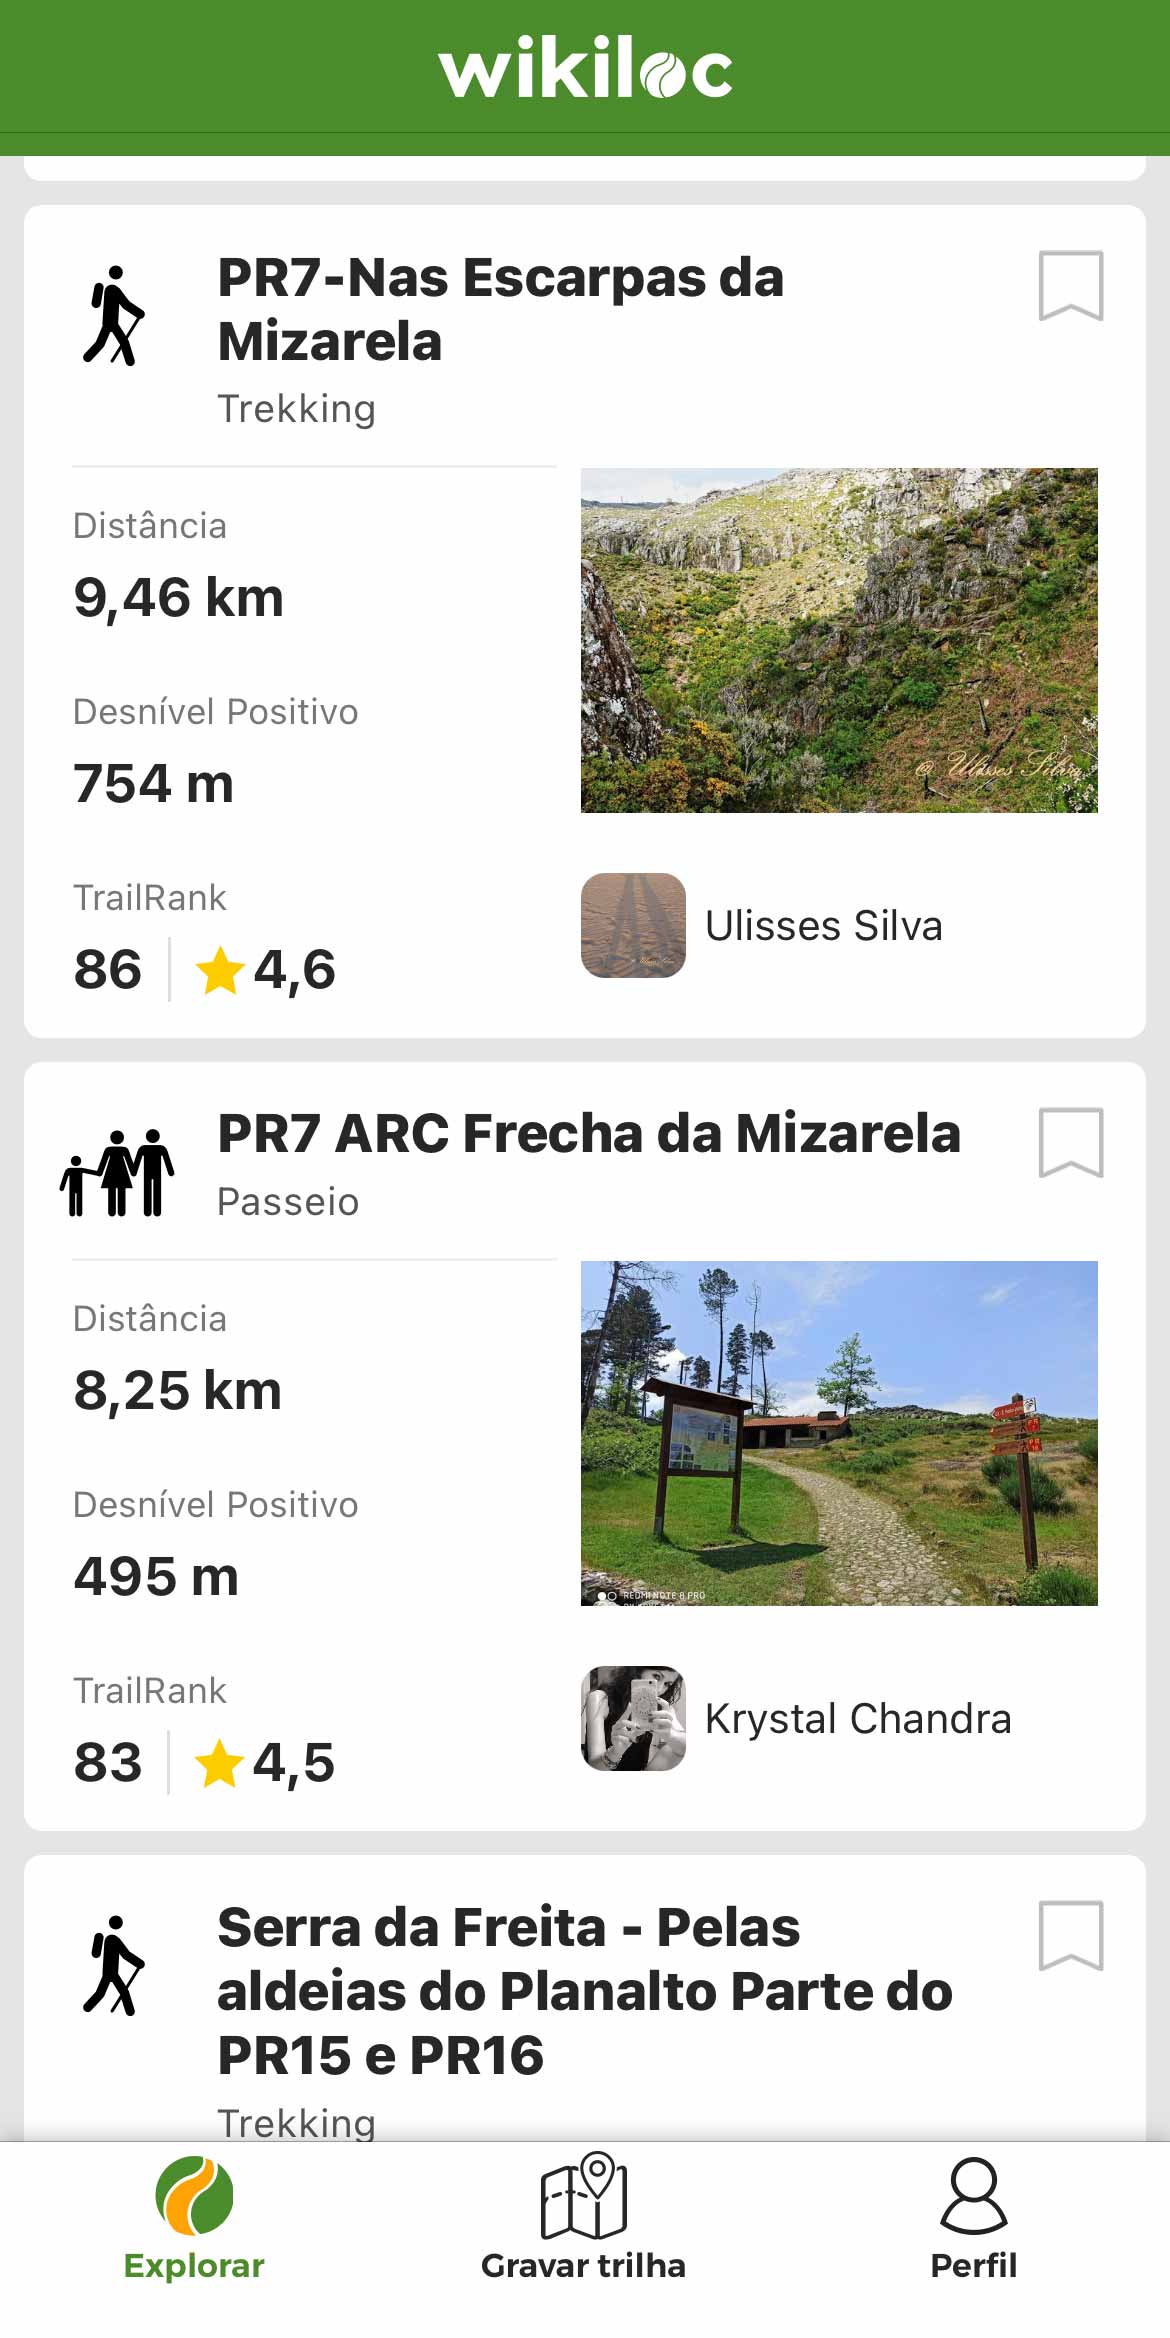 Indicações do Wikiloc sobre o PR7 Nas Escarpas da Mizarela, trilho na Serra da Freita, em Arouca.